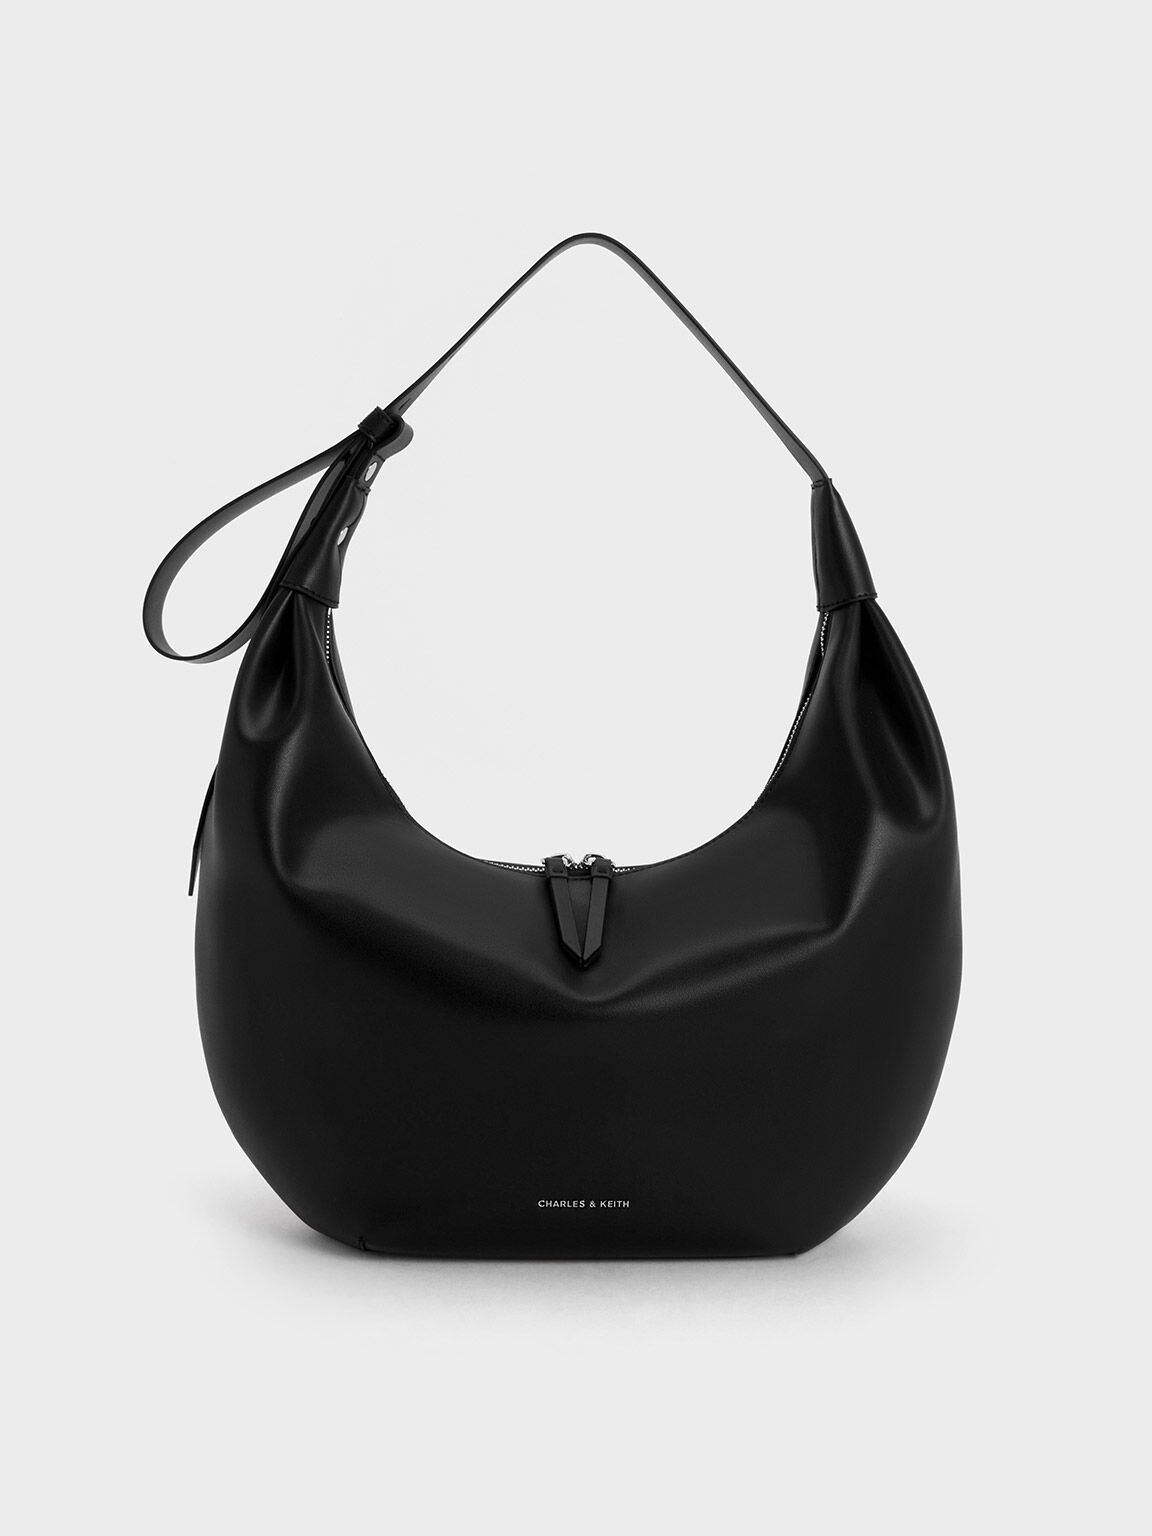 BLACK LEATHER HOBO Bag Oversize Shoulder Bag Everyday Leather Purse Soft Leather  Handbag for Women - Etsy